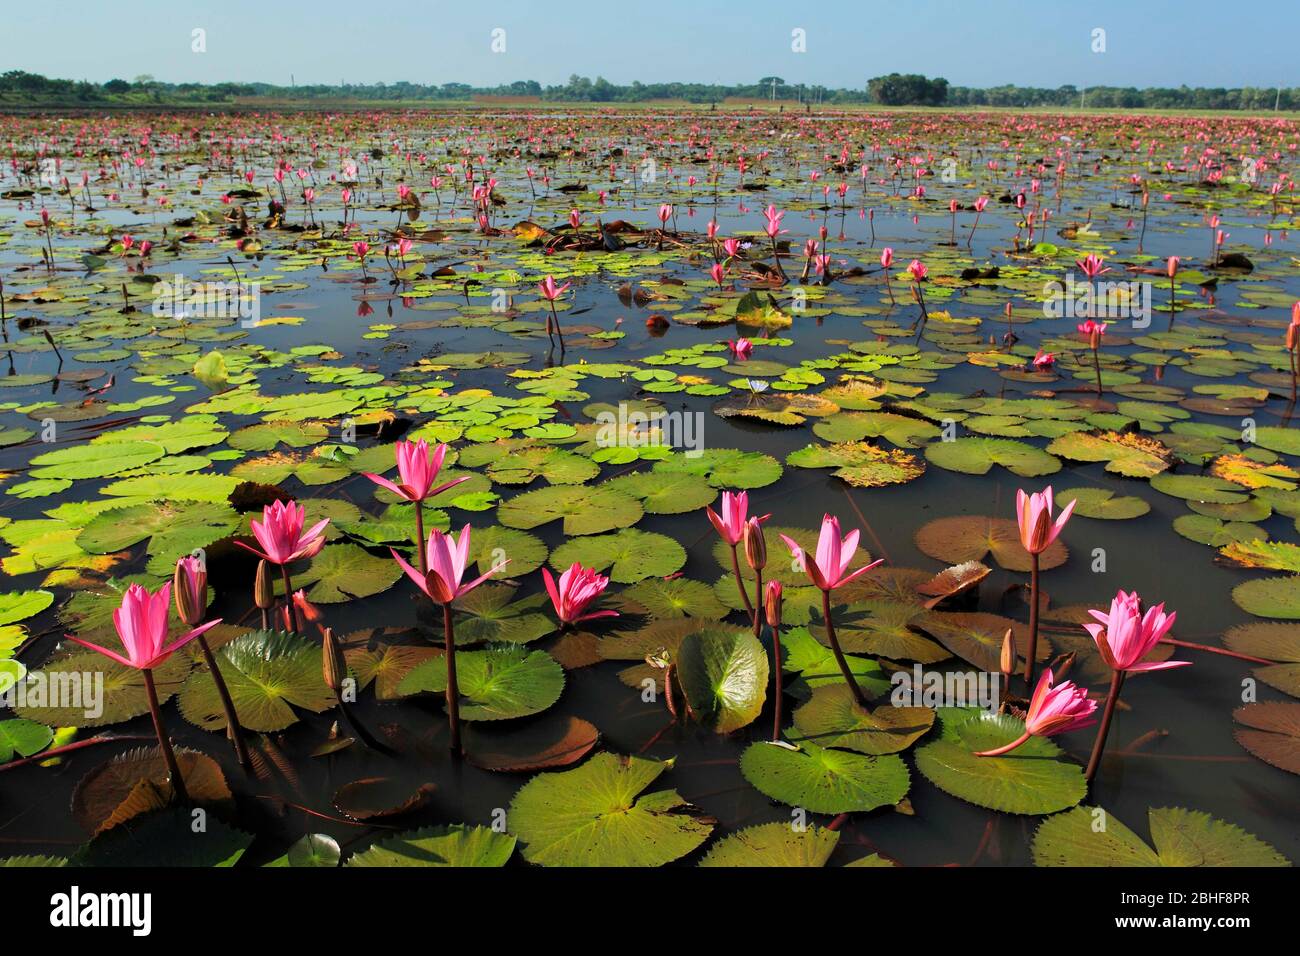 Photo de stock - le Lotus, Nelumbo nucifera, connu localement sous le nom de 'Padma', est une plante aquatique nymphaeacée, trouvée dans les basses terres du Bangladesh. Banque D'Images